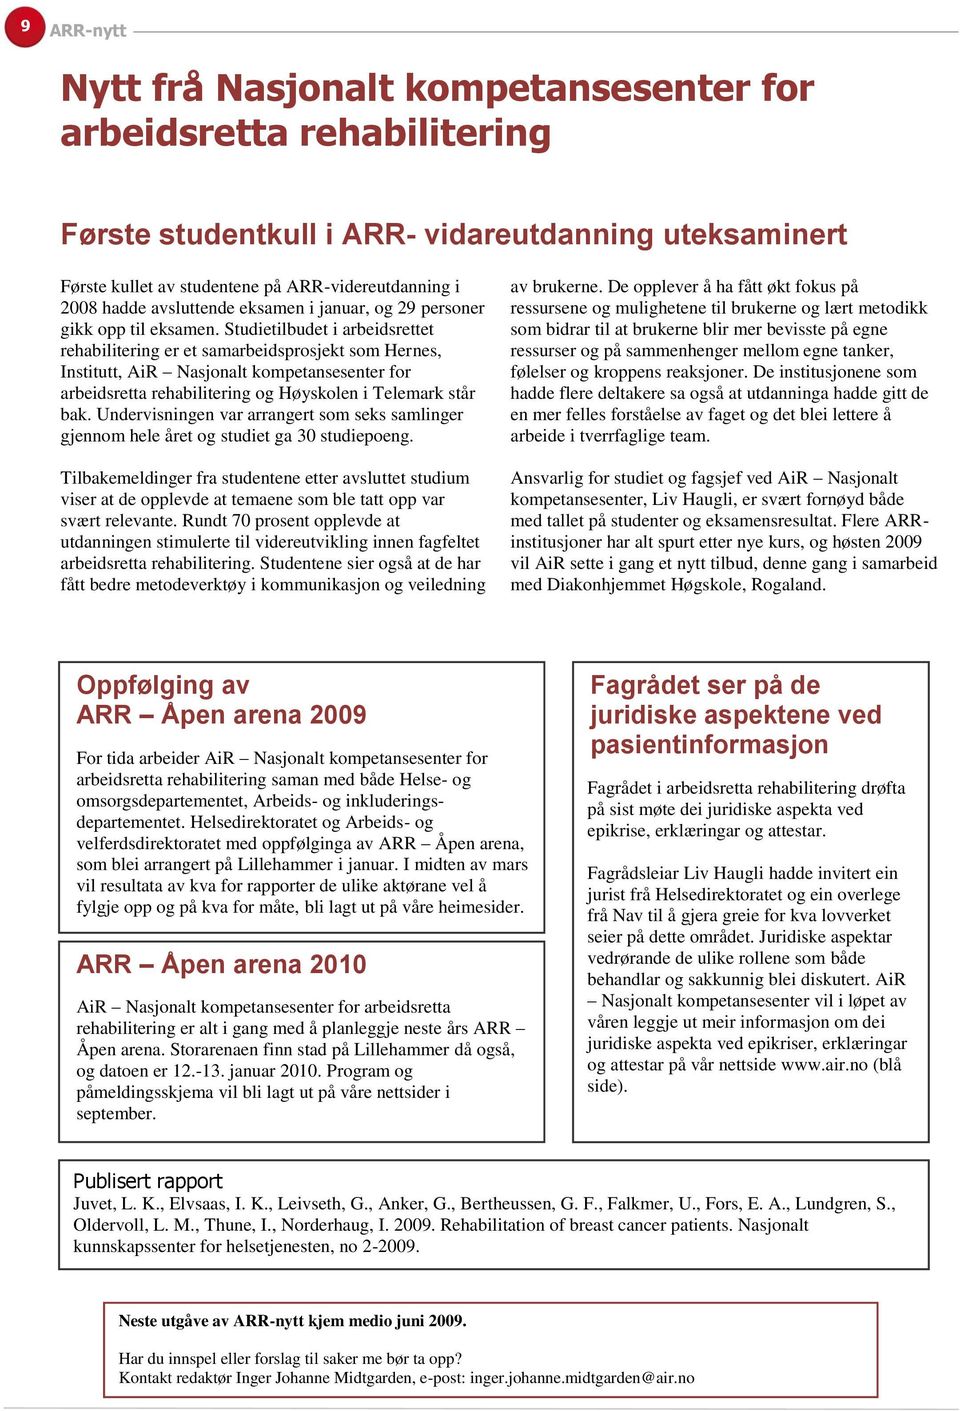 Studietilbudet i arbeidsrettet rehabilitering er et samarbeidsprosjekt som Hernes, Institutt, AiR Nasjonalt kompetansesenter for arbeidsretta rehabilitering og Høyskolen i Telemark står bak.